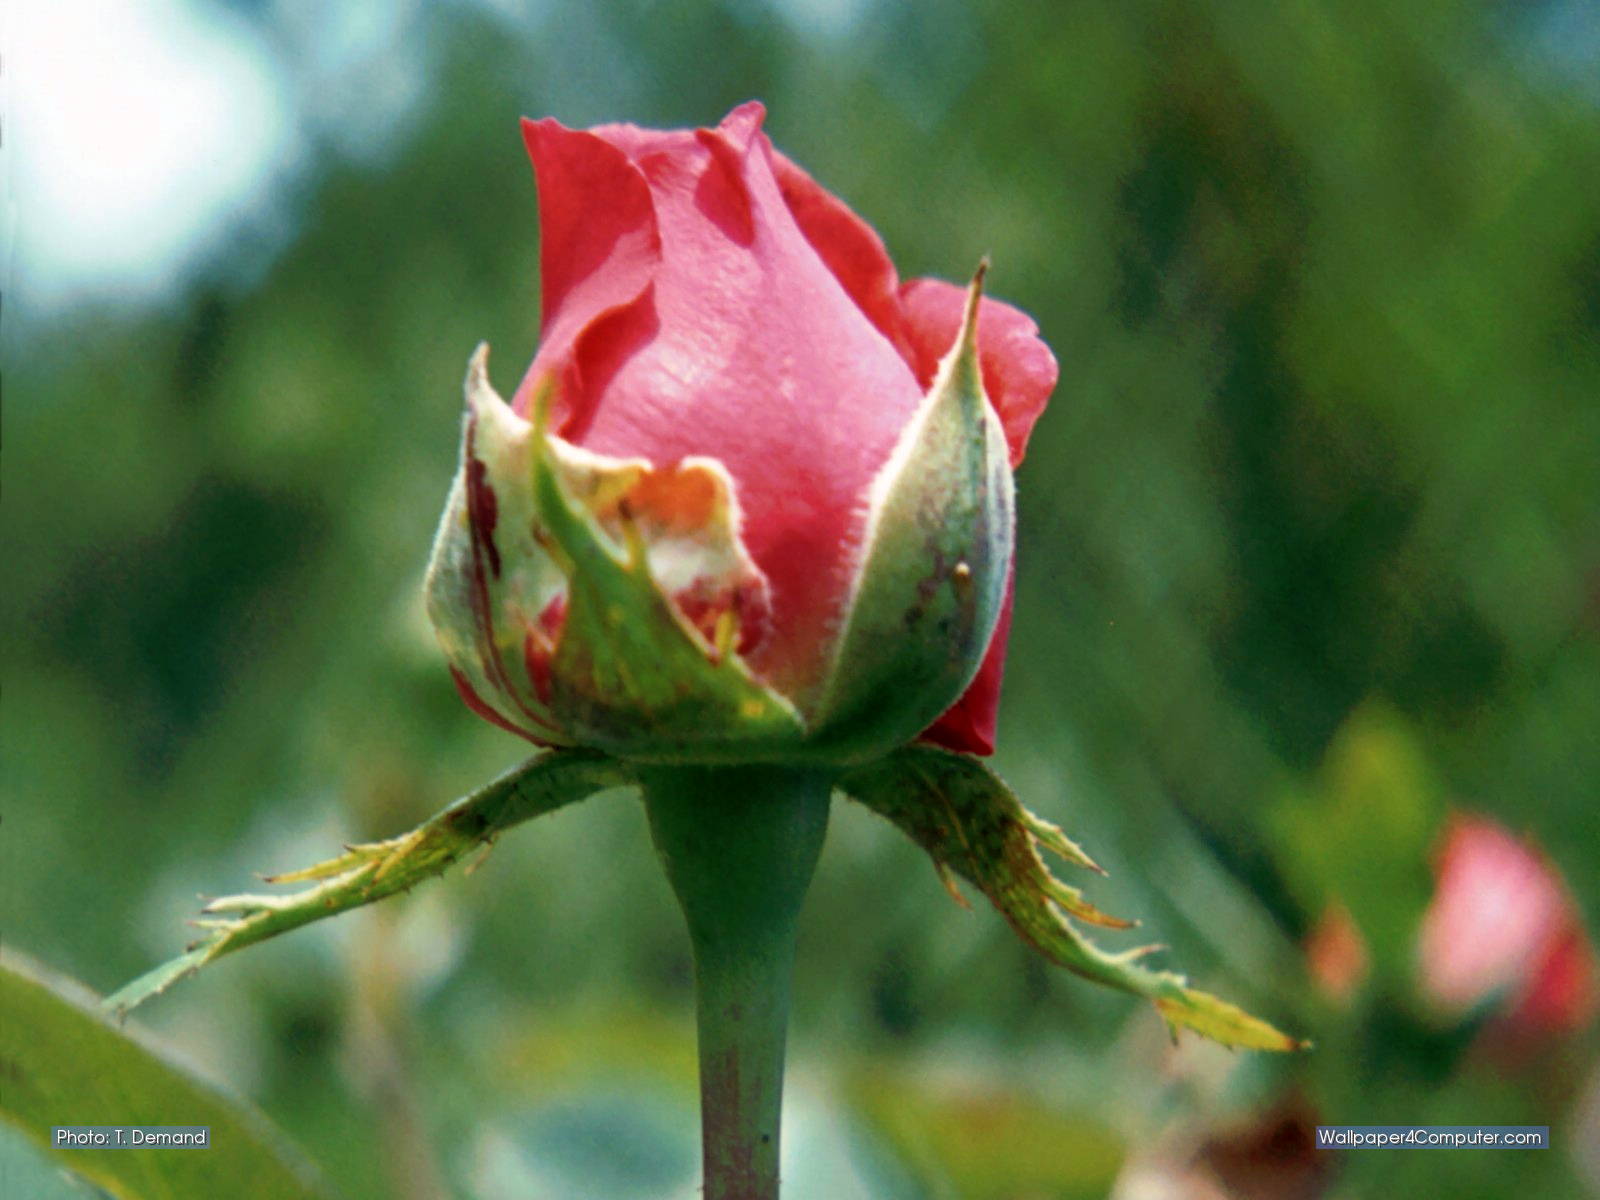 Wallpaper - Rosebud - Garden Roses , HD Wallpaper & Backgrounds